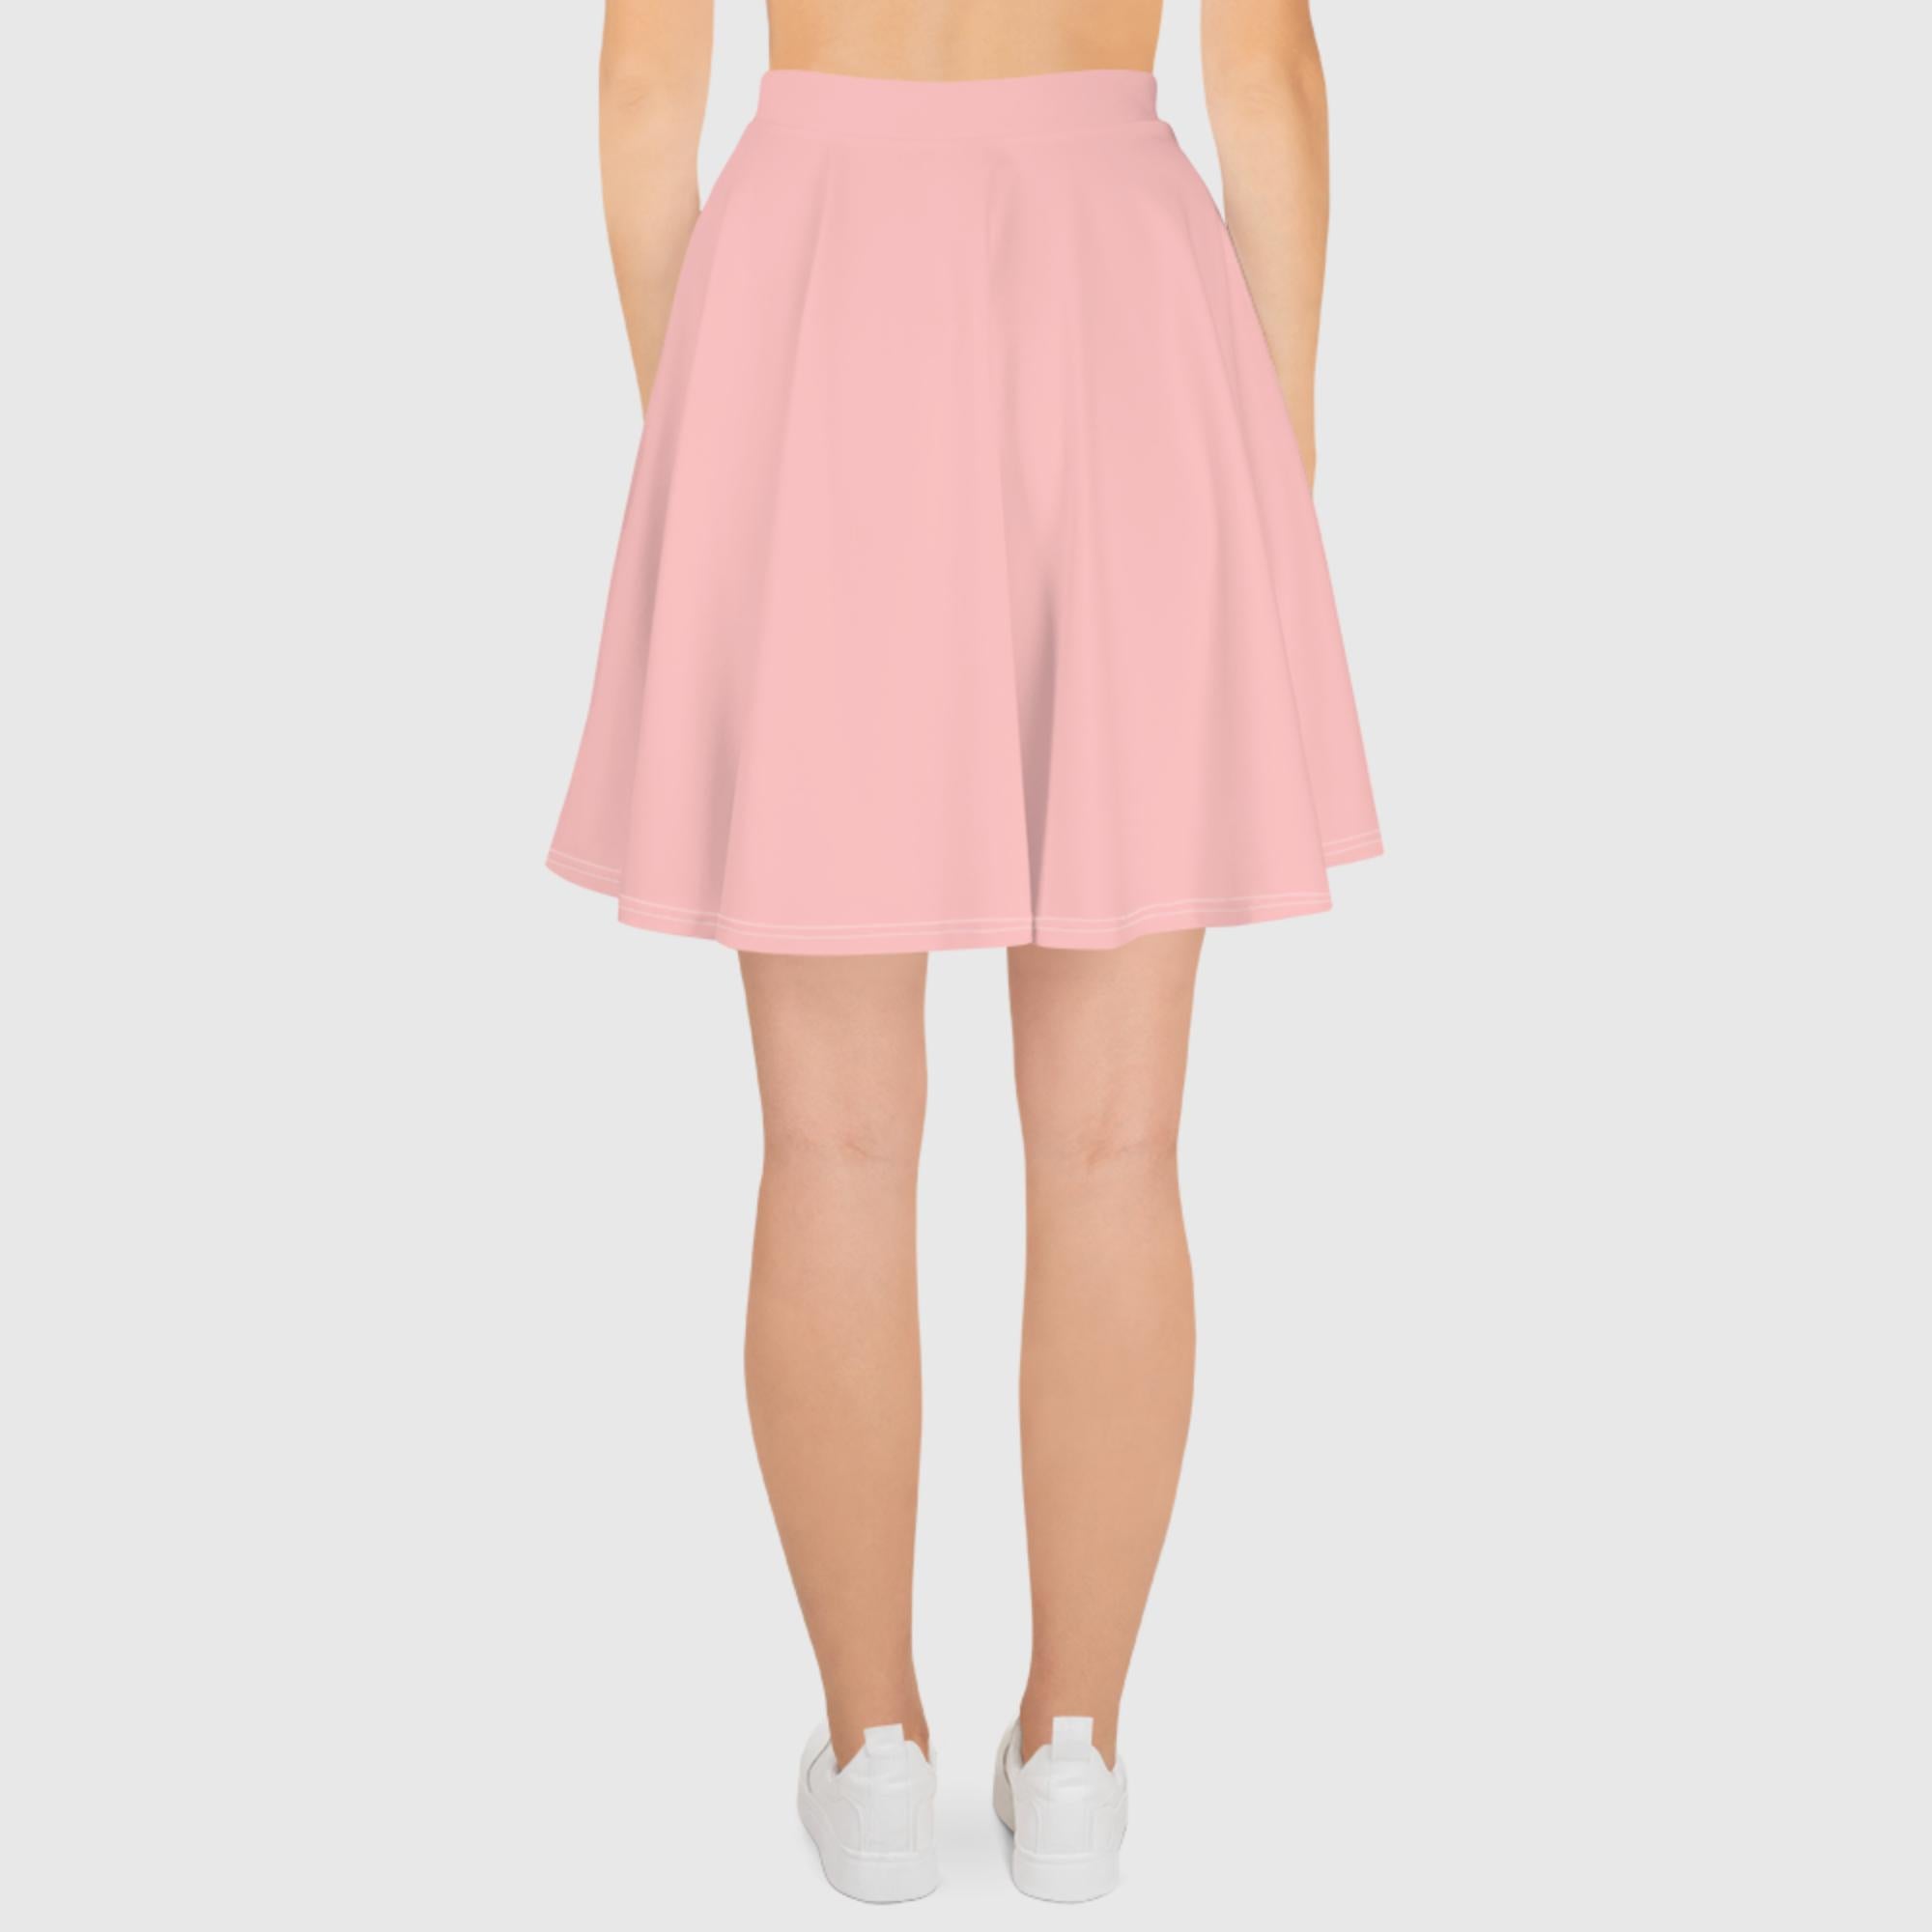 Skater Skirt - Pink - Sunset Harbor Clothing